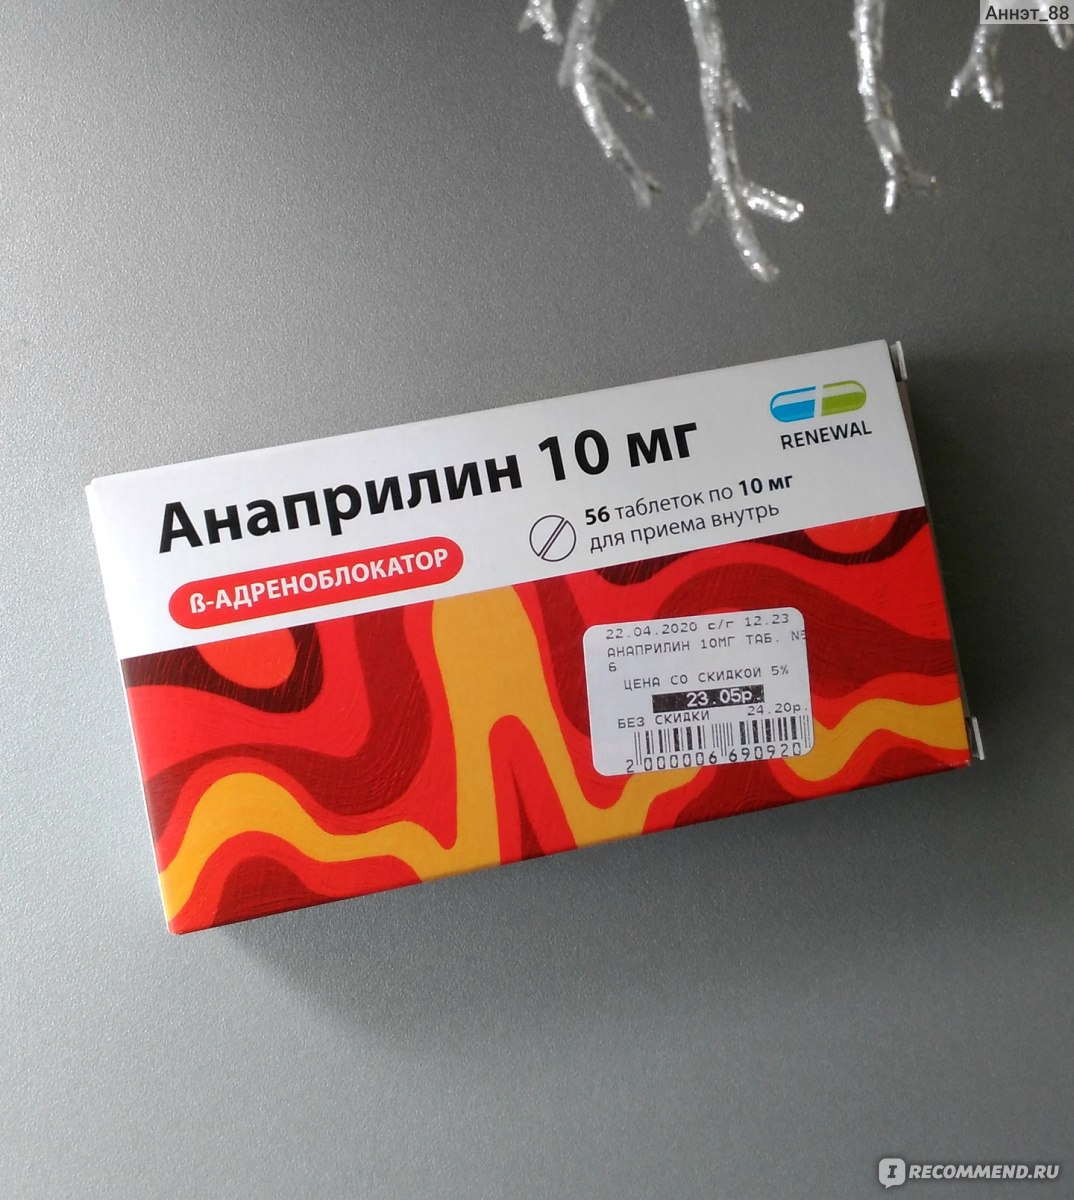 Анаприлин отзывы врачей. Анаприлин реневал 10 мг. Анаприлин таблетки 10 мг. Анаприлин 40 реневал. Пропранолол анаприлин.